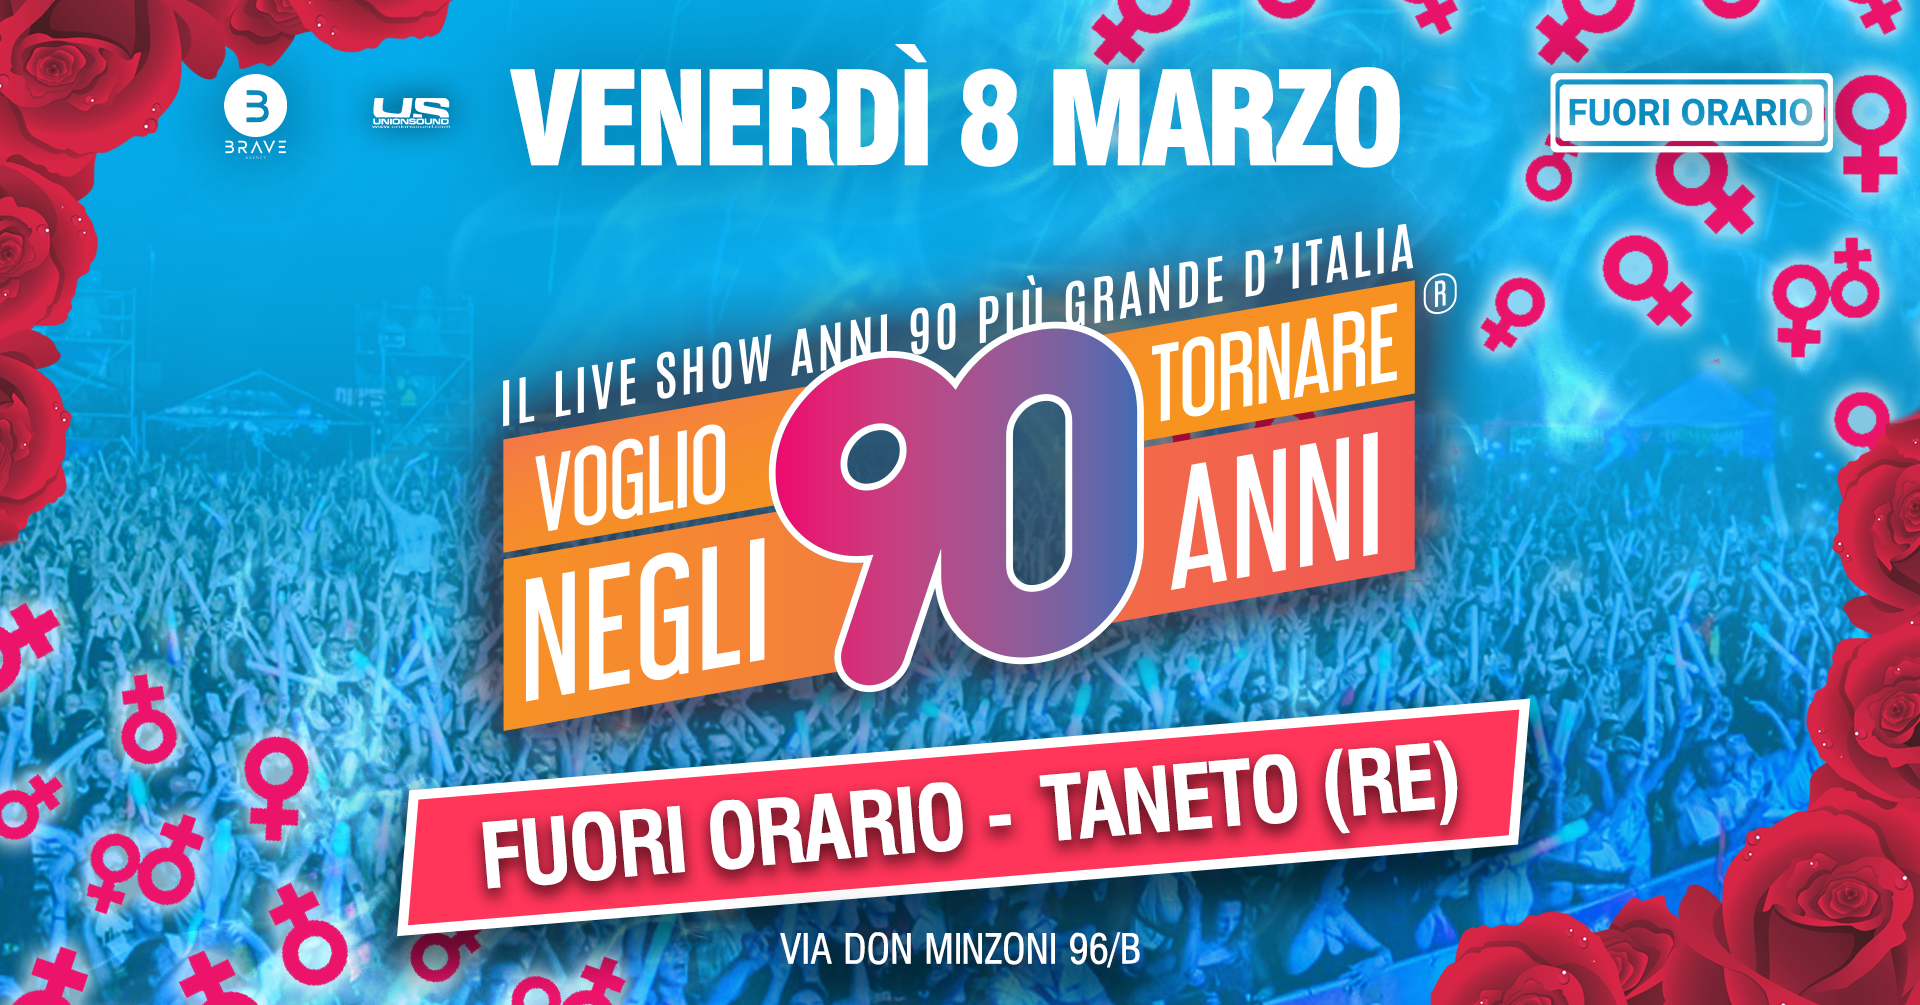 4/2 - Festa Anni 90 di Parma & Reggio al Fuori Orario - Oggi a Parma